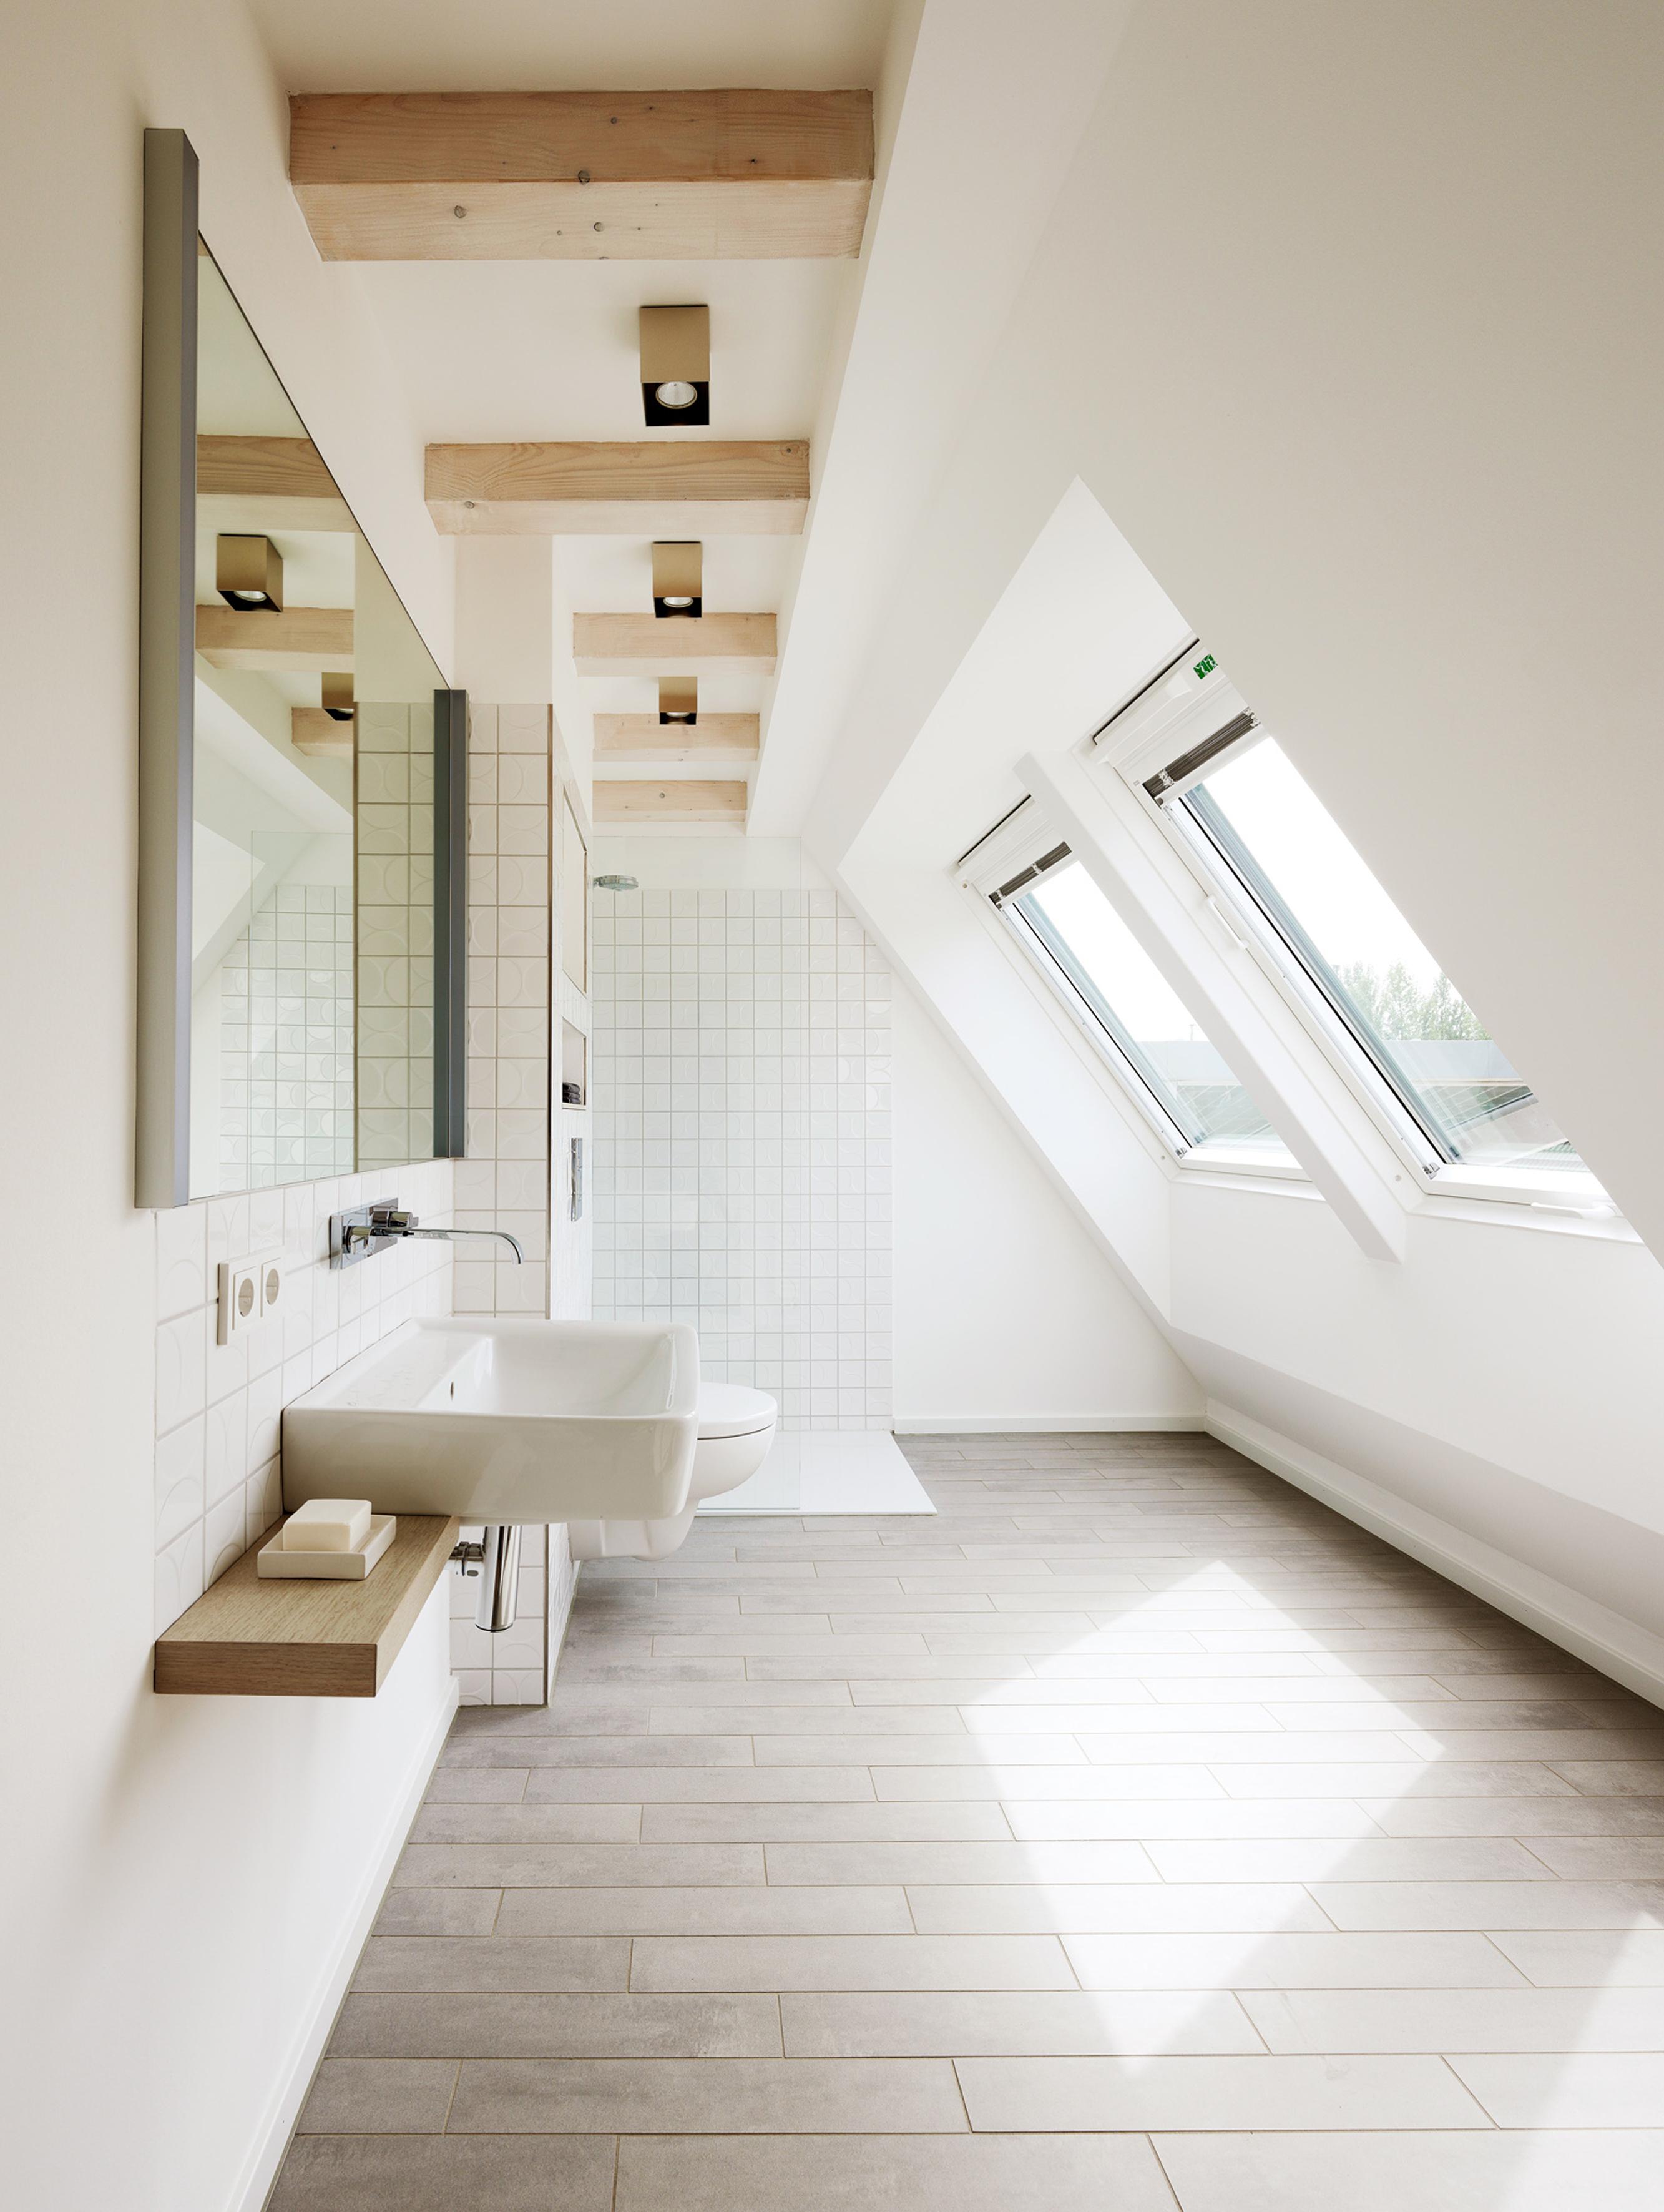 Dusche mit Ausblick #dachschräge #fliesen #spiegel #holzbalken #waschbecken #keramikwaschbecken ©Grohe